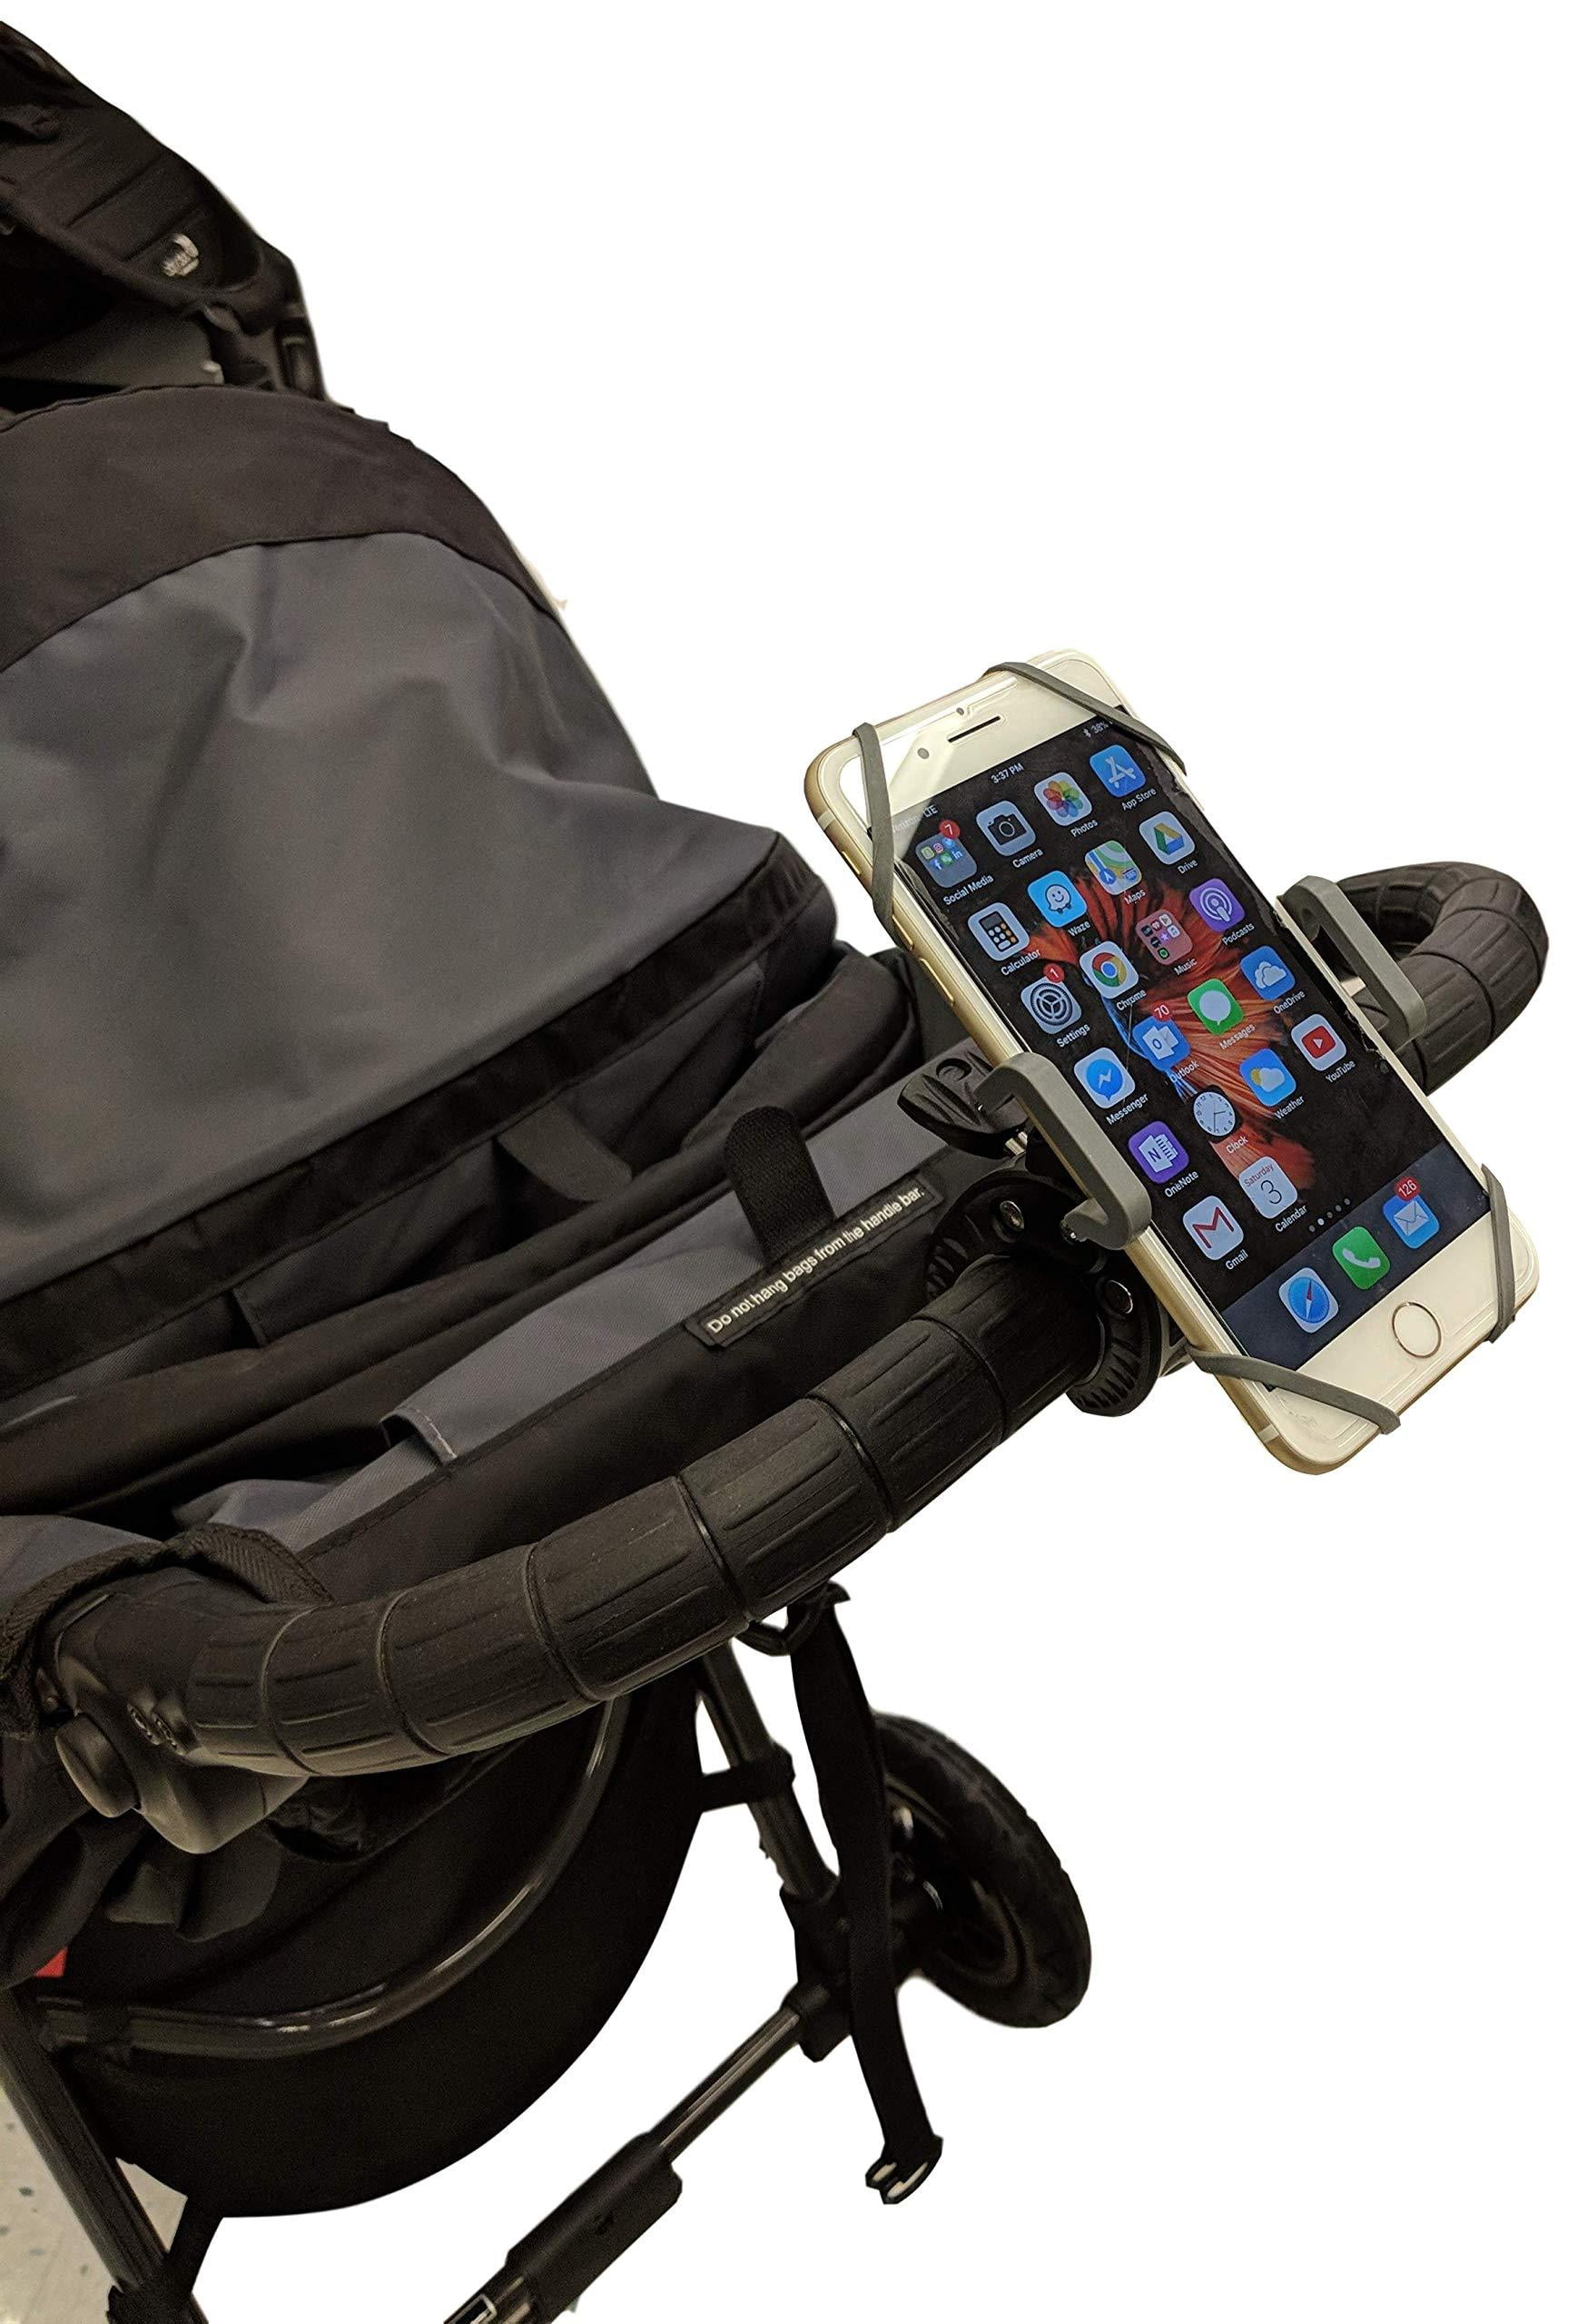 stroller cell phone holder